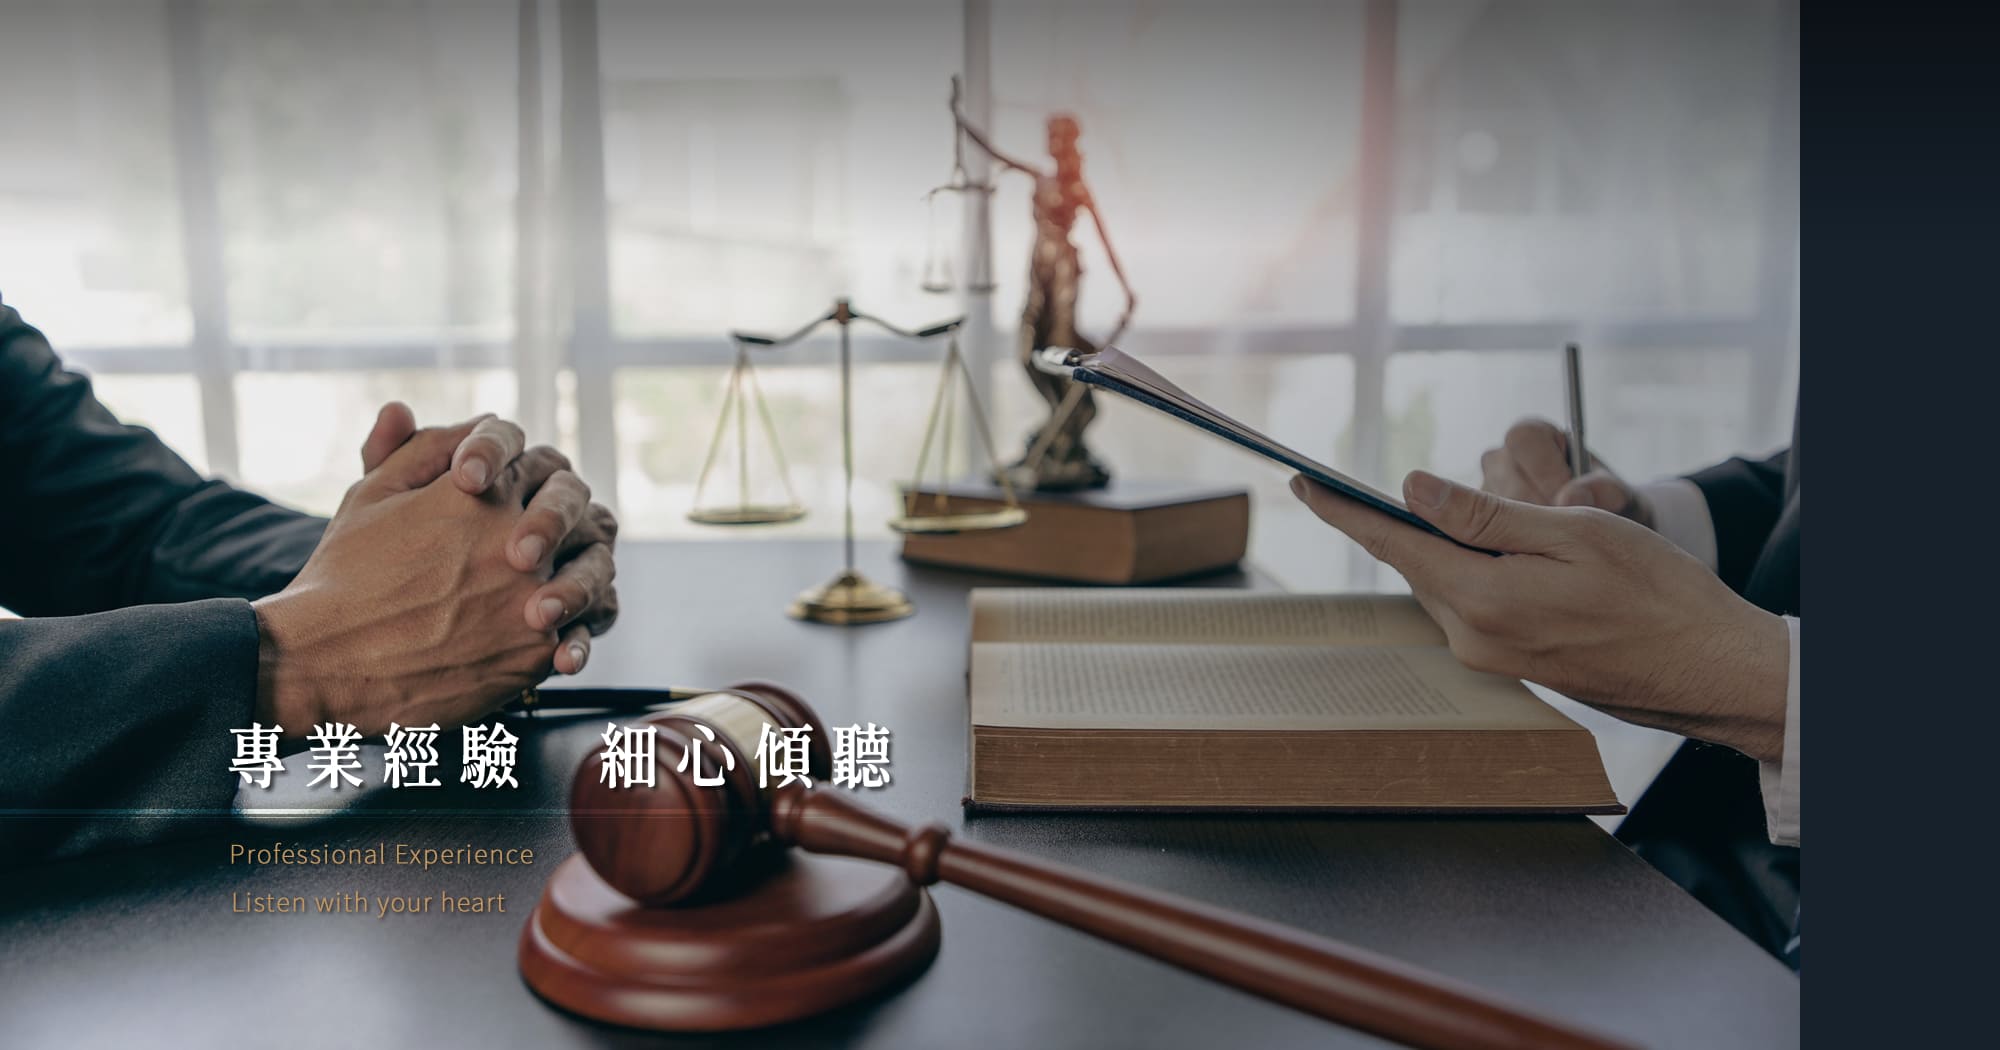 台中律師事務所,源道聯合法律事務所-王瑞甫律師,免費法律諮詢